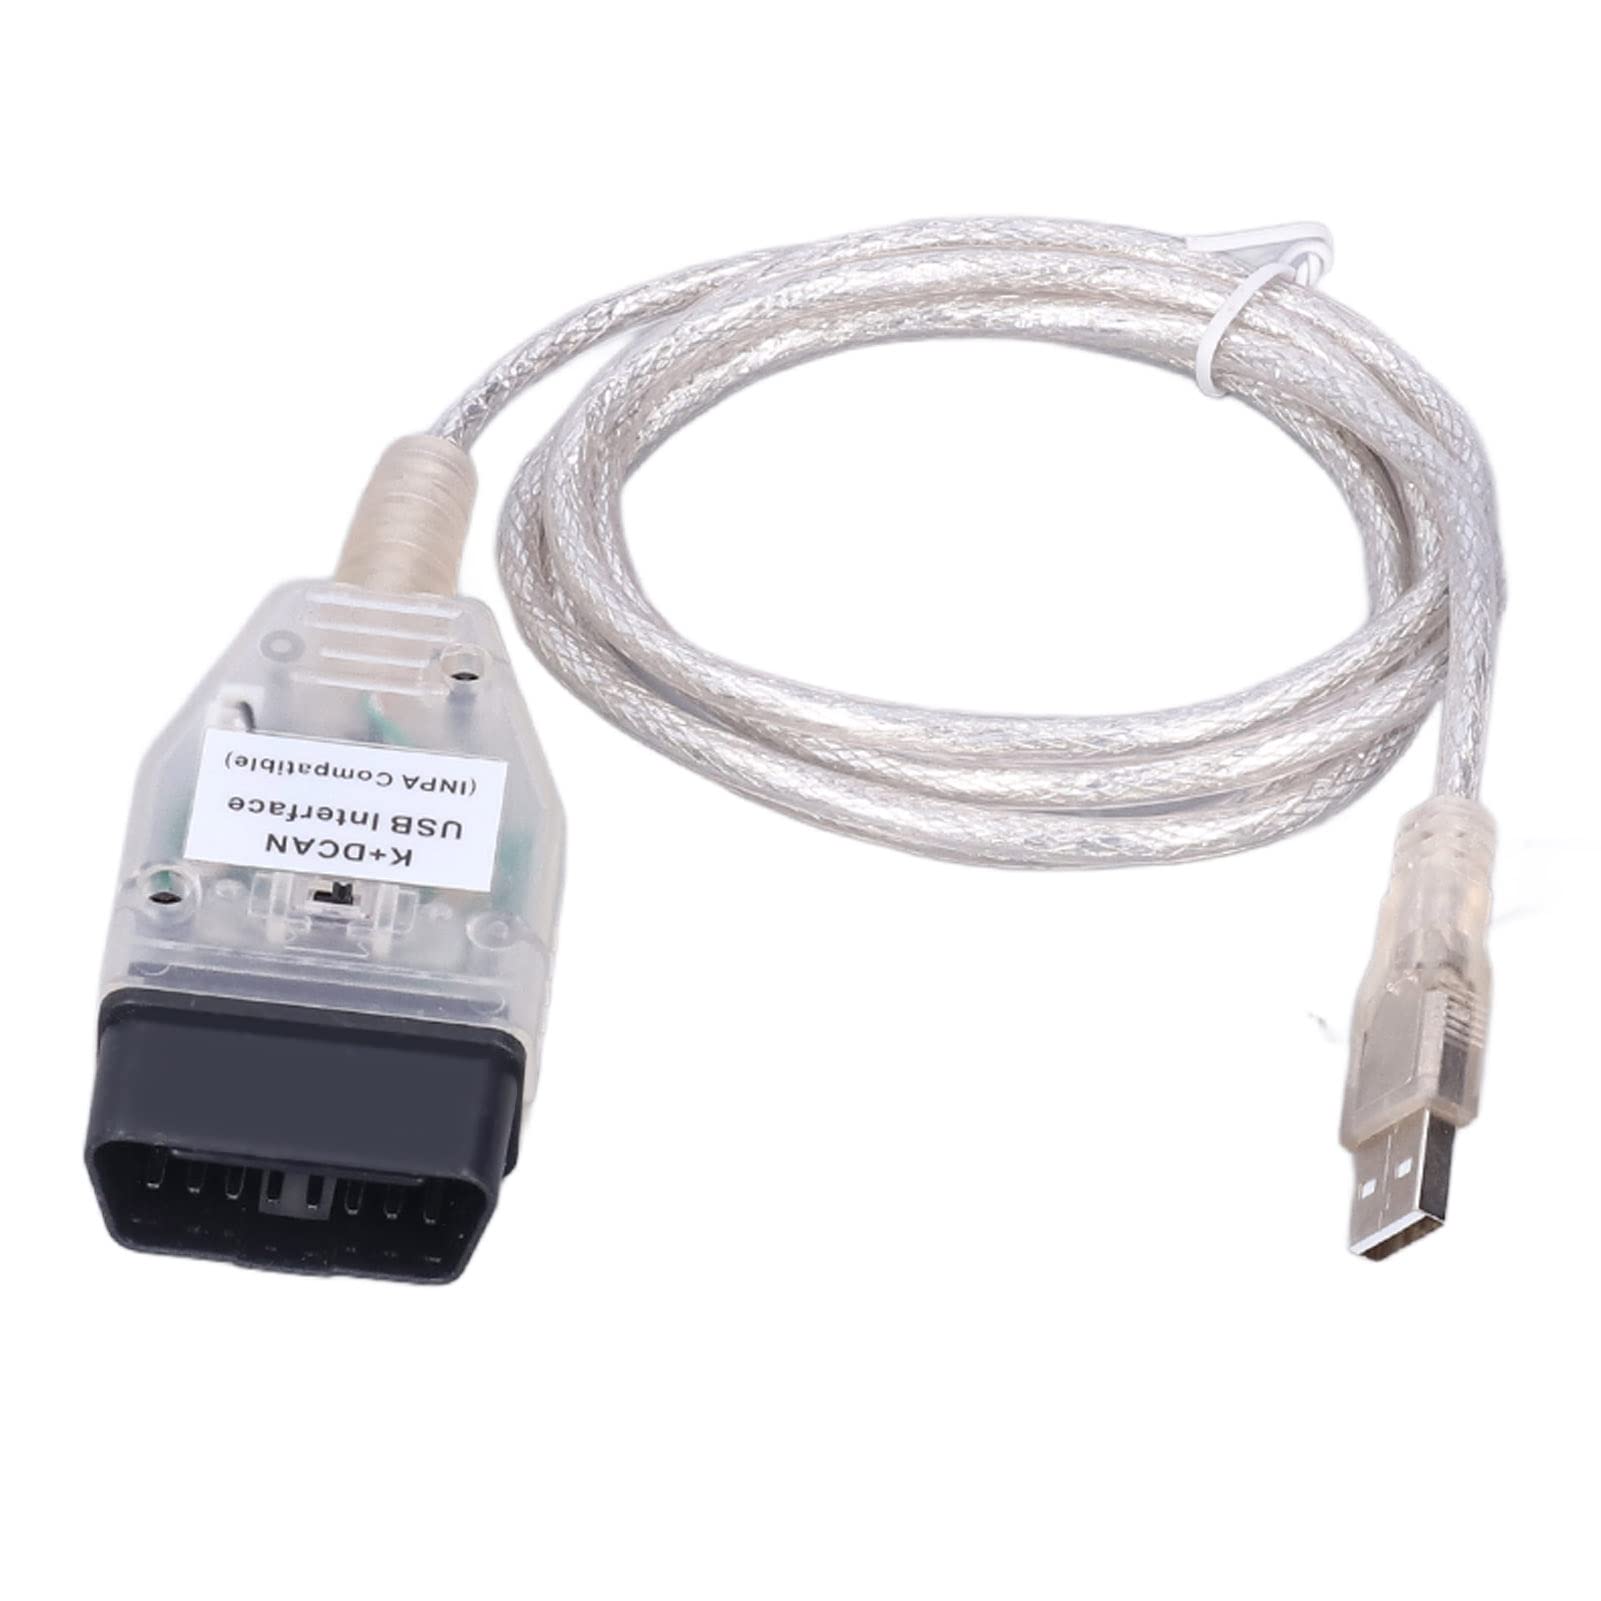 Auto-Diagnosewerkzeugkabel, K + Dcan Obd2 USB-Kabelschnittstelle mit Schalterersatz Interface OBD Schnittstellenkabel für Serie 1 E81 E82 E83 E87 E88 20042011 Kfz-Motorcode Sca von Tbest